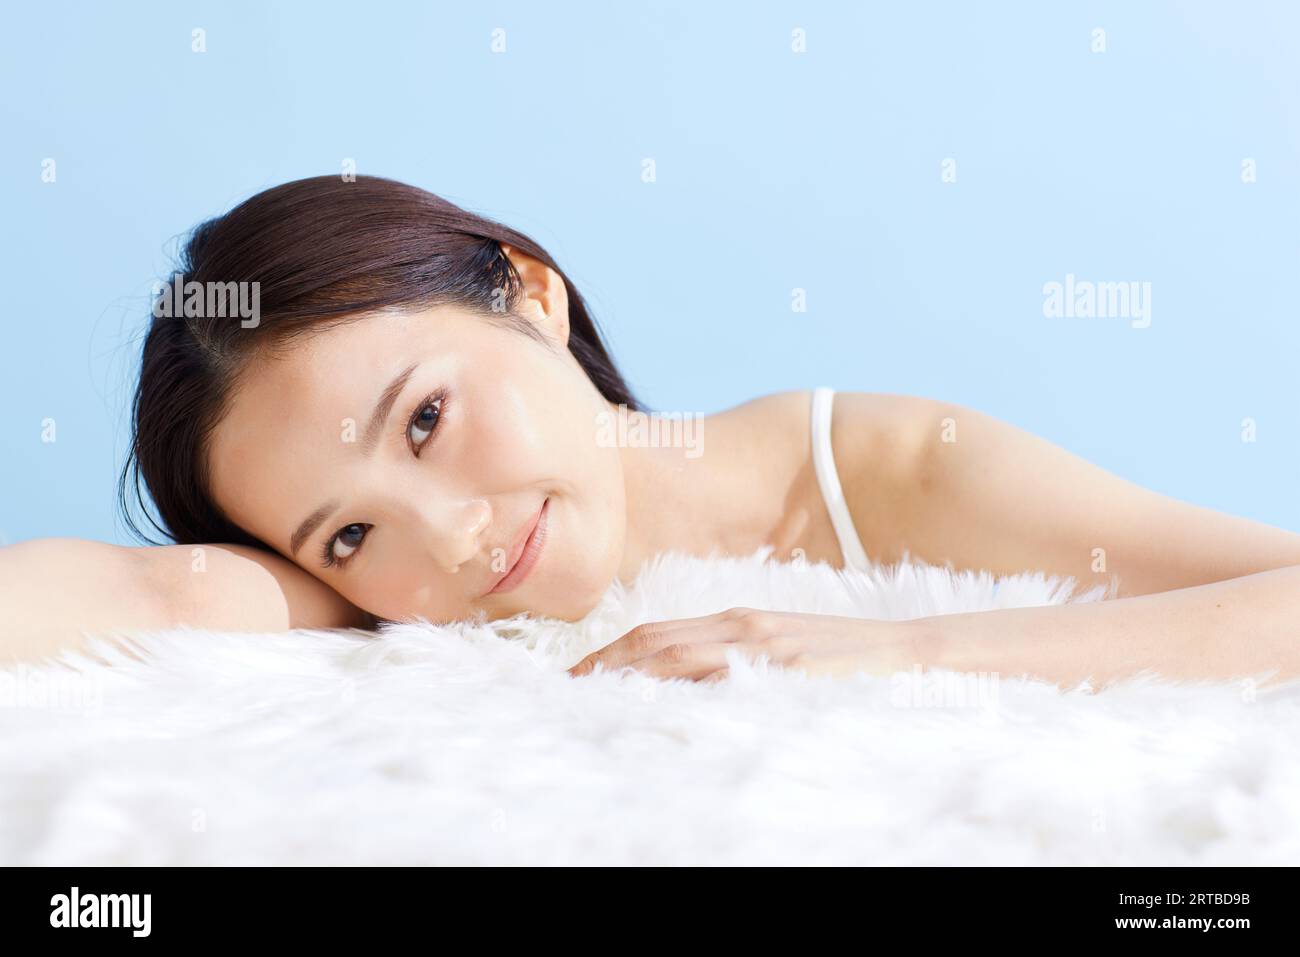 Japanische Frau Schönheit Porträt Stockfoto